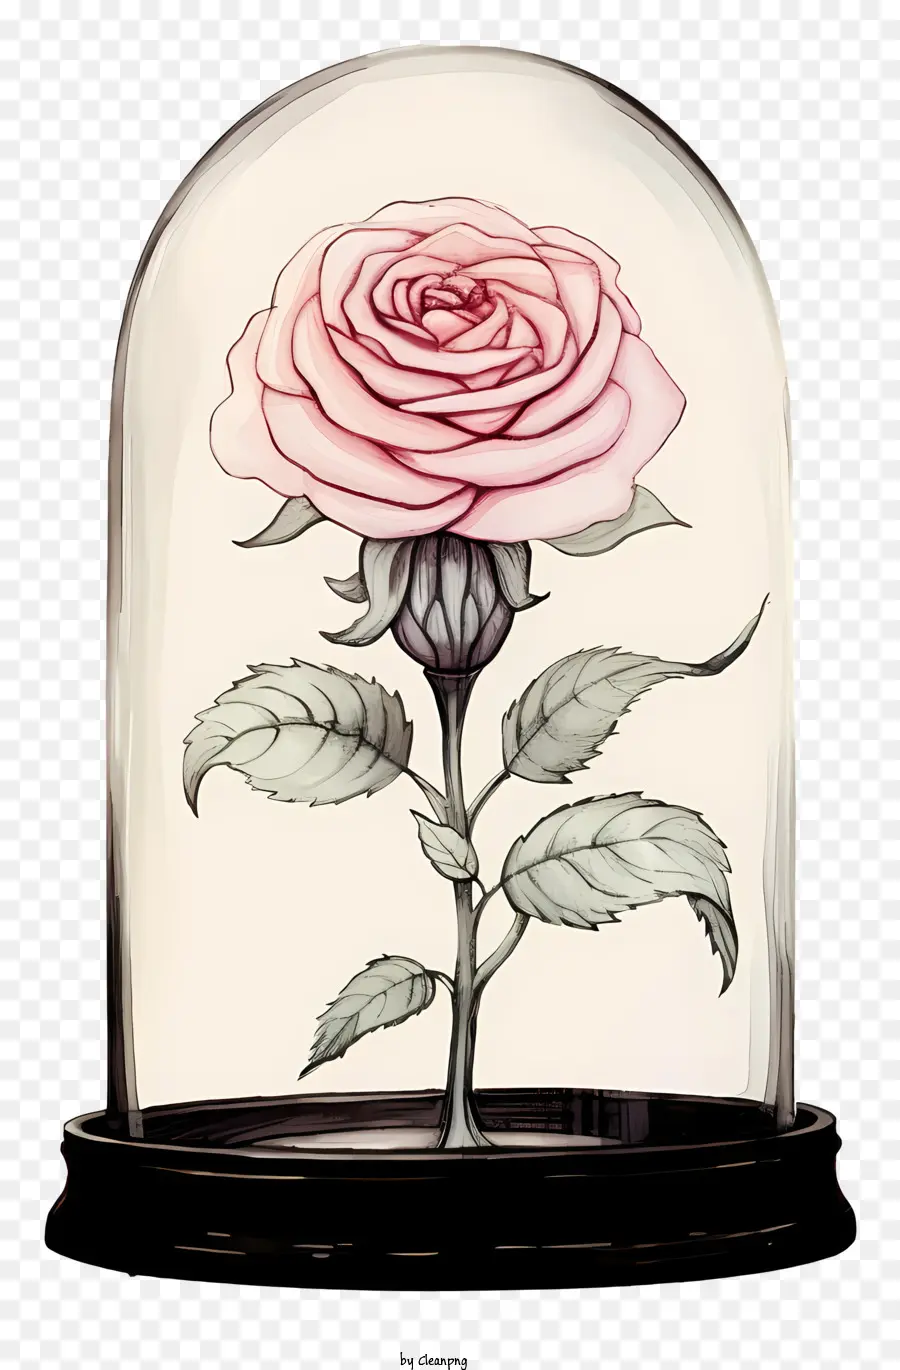 rosa rose - Rosa dornierte Rose in klarer Glaskuppel